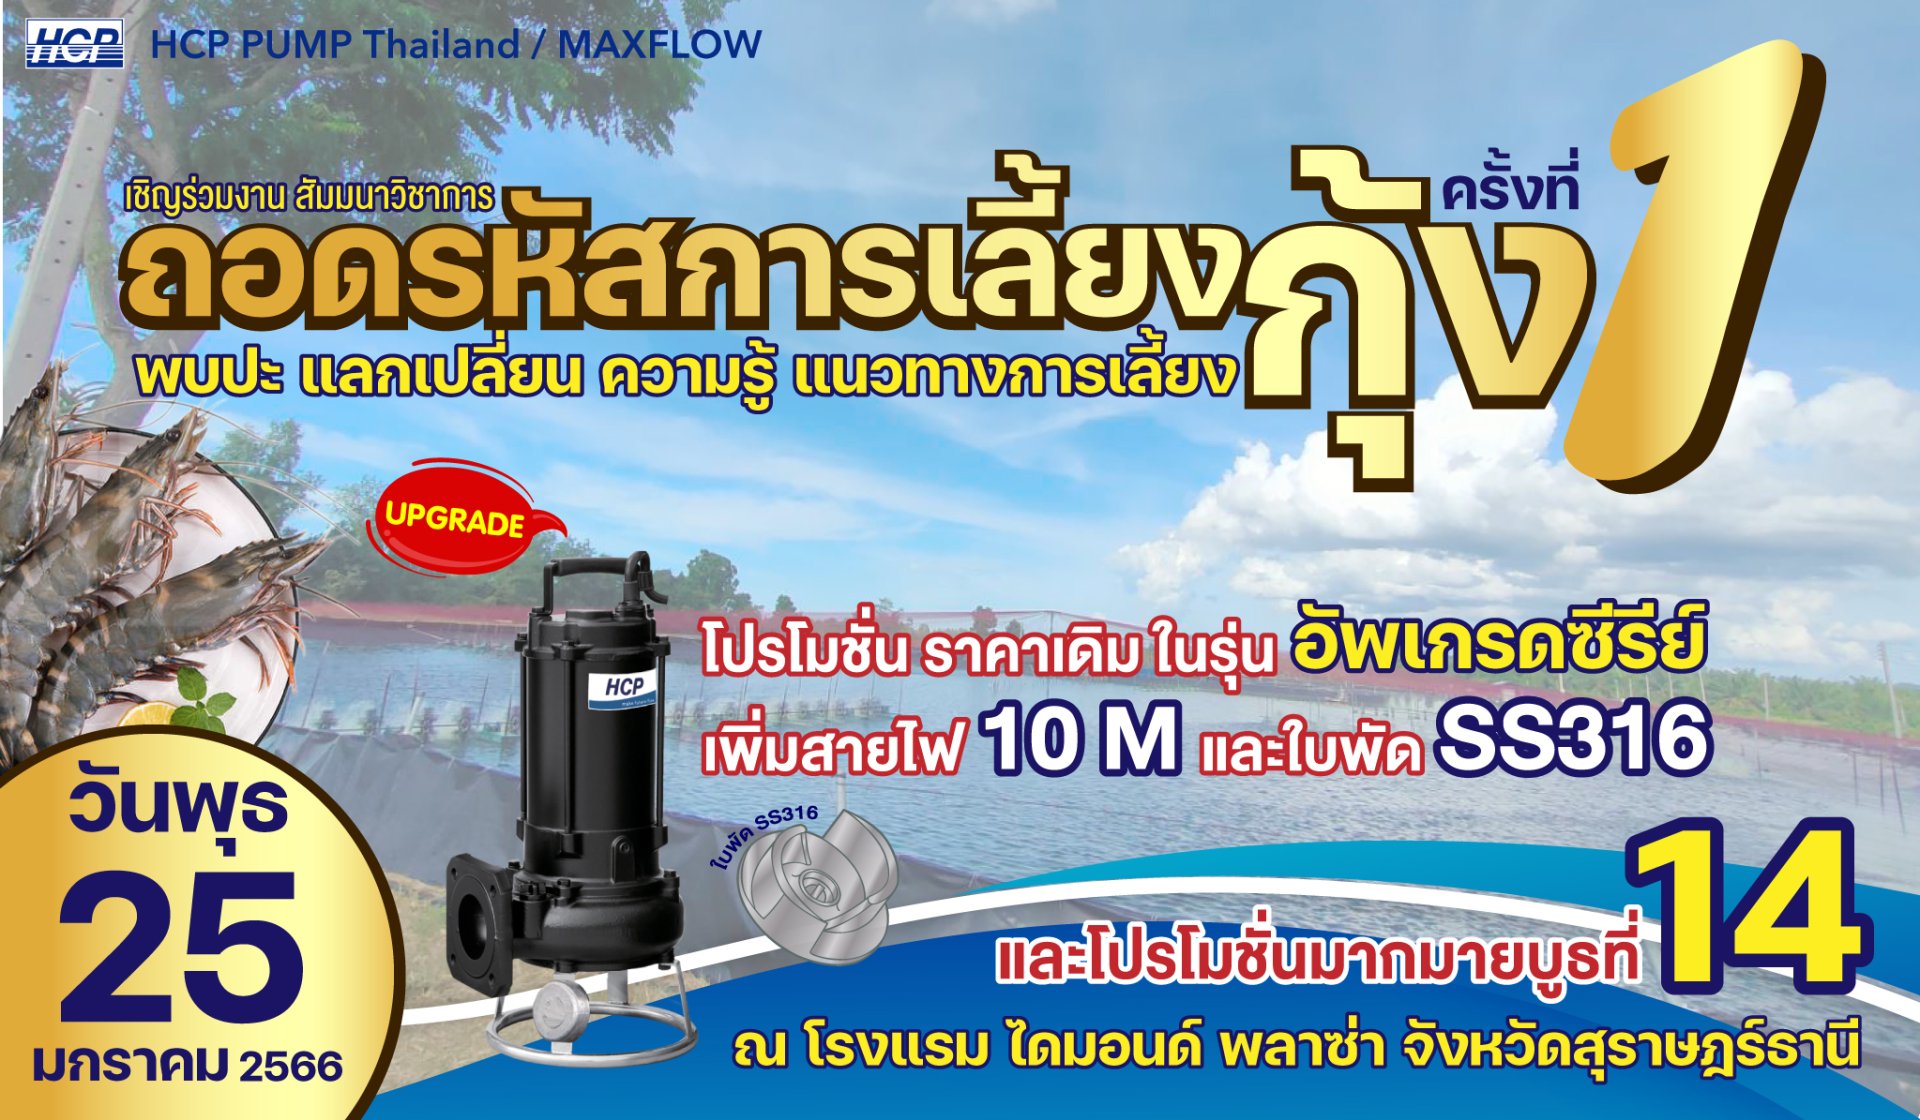 EVENT งานสัมนาวิชาการ ถอดรหัสเลี้ยงกุ้งไทย ครั้งที่ 1 | จังหวัดสุราษฎร์ธานี